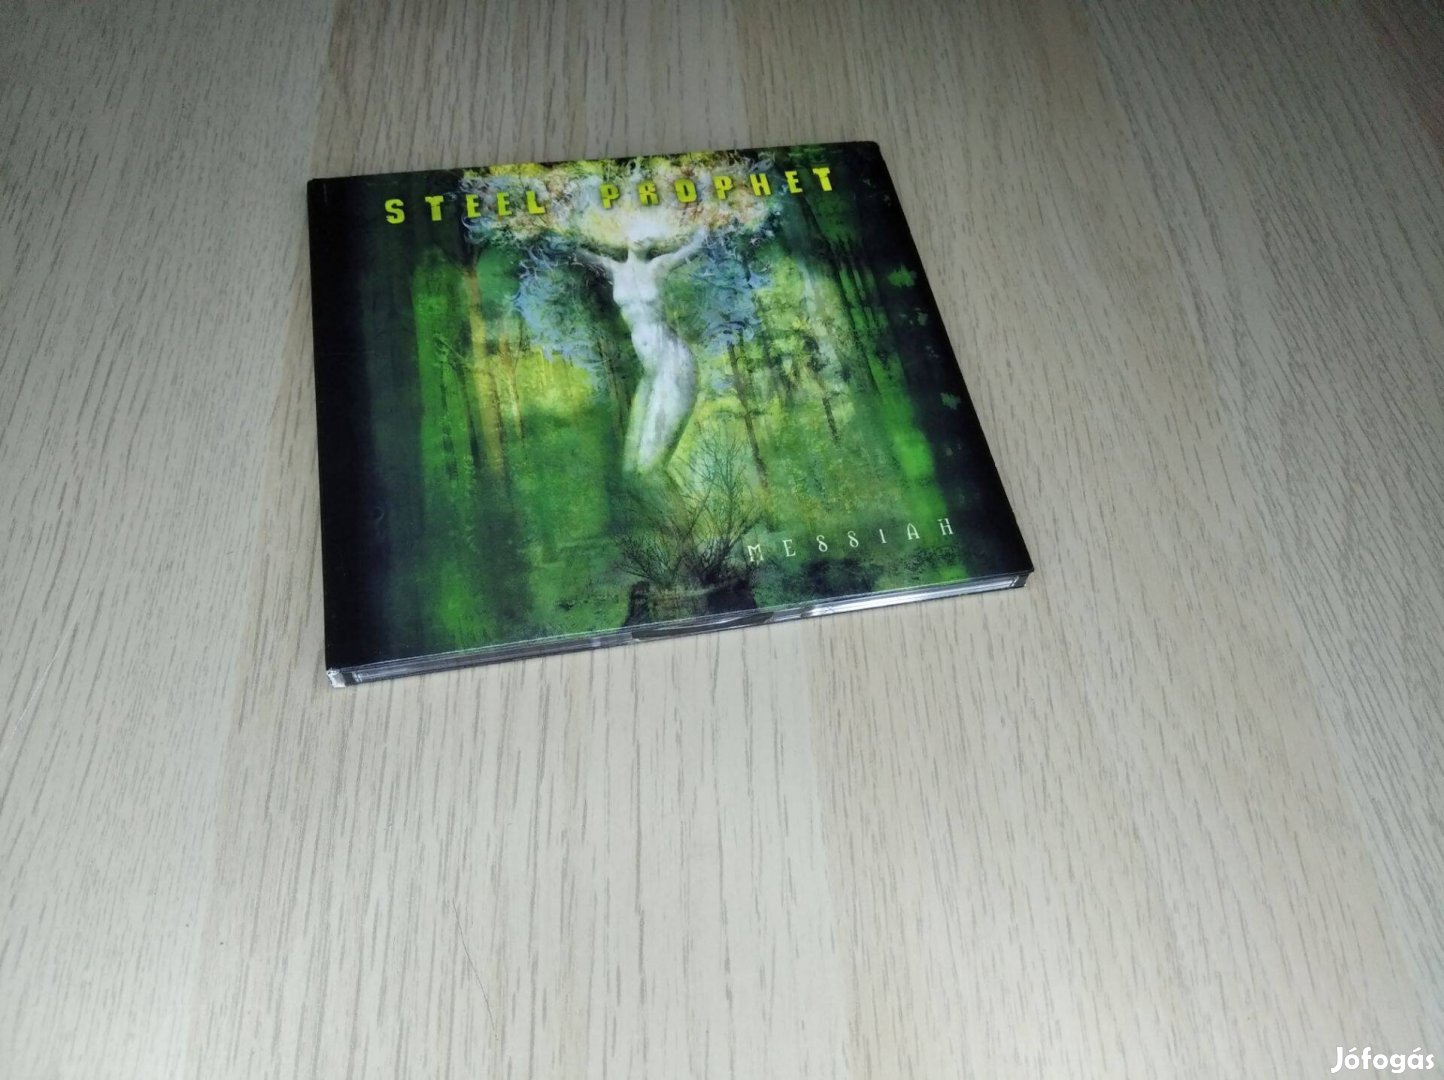 Steel Prophet - Messiah / CD